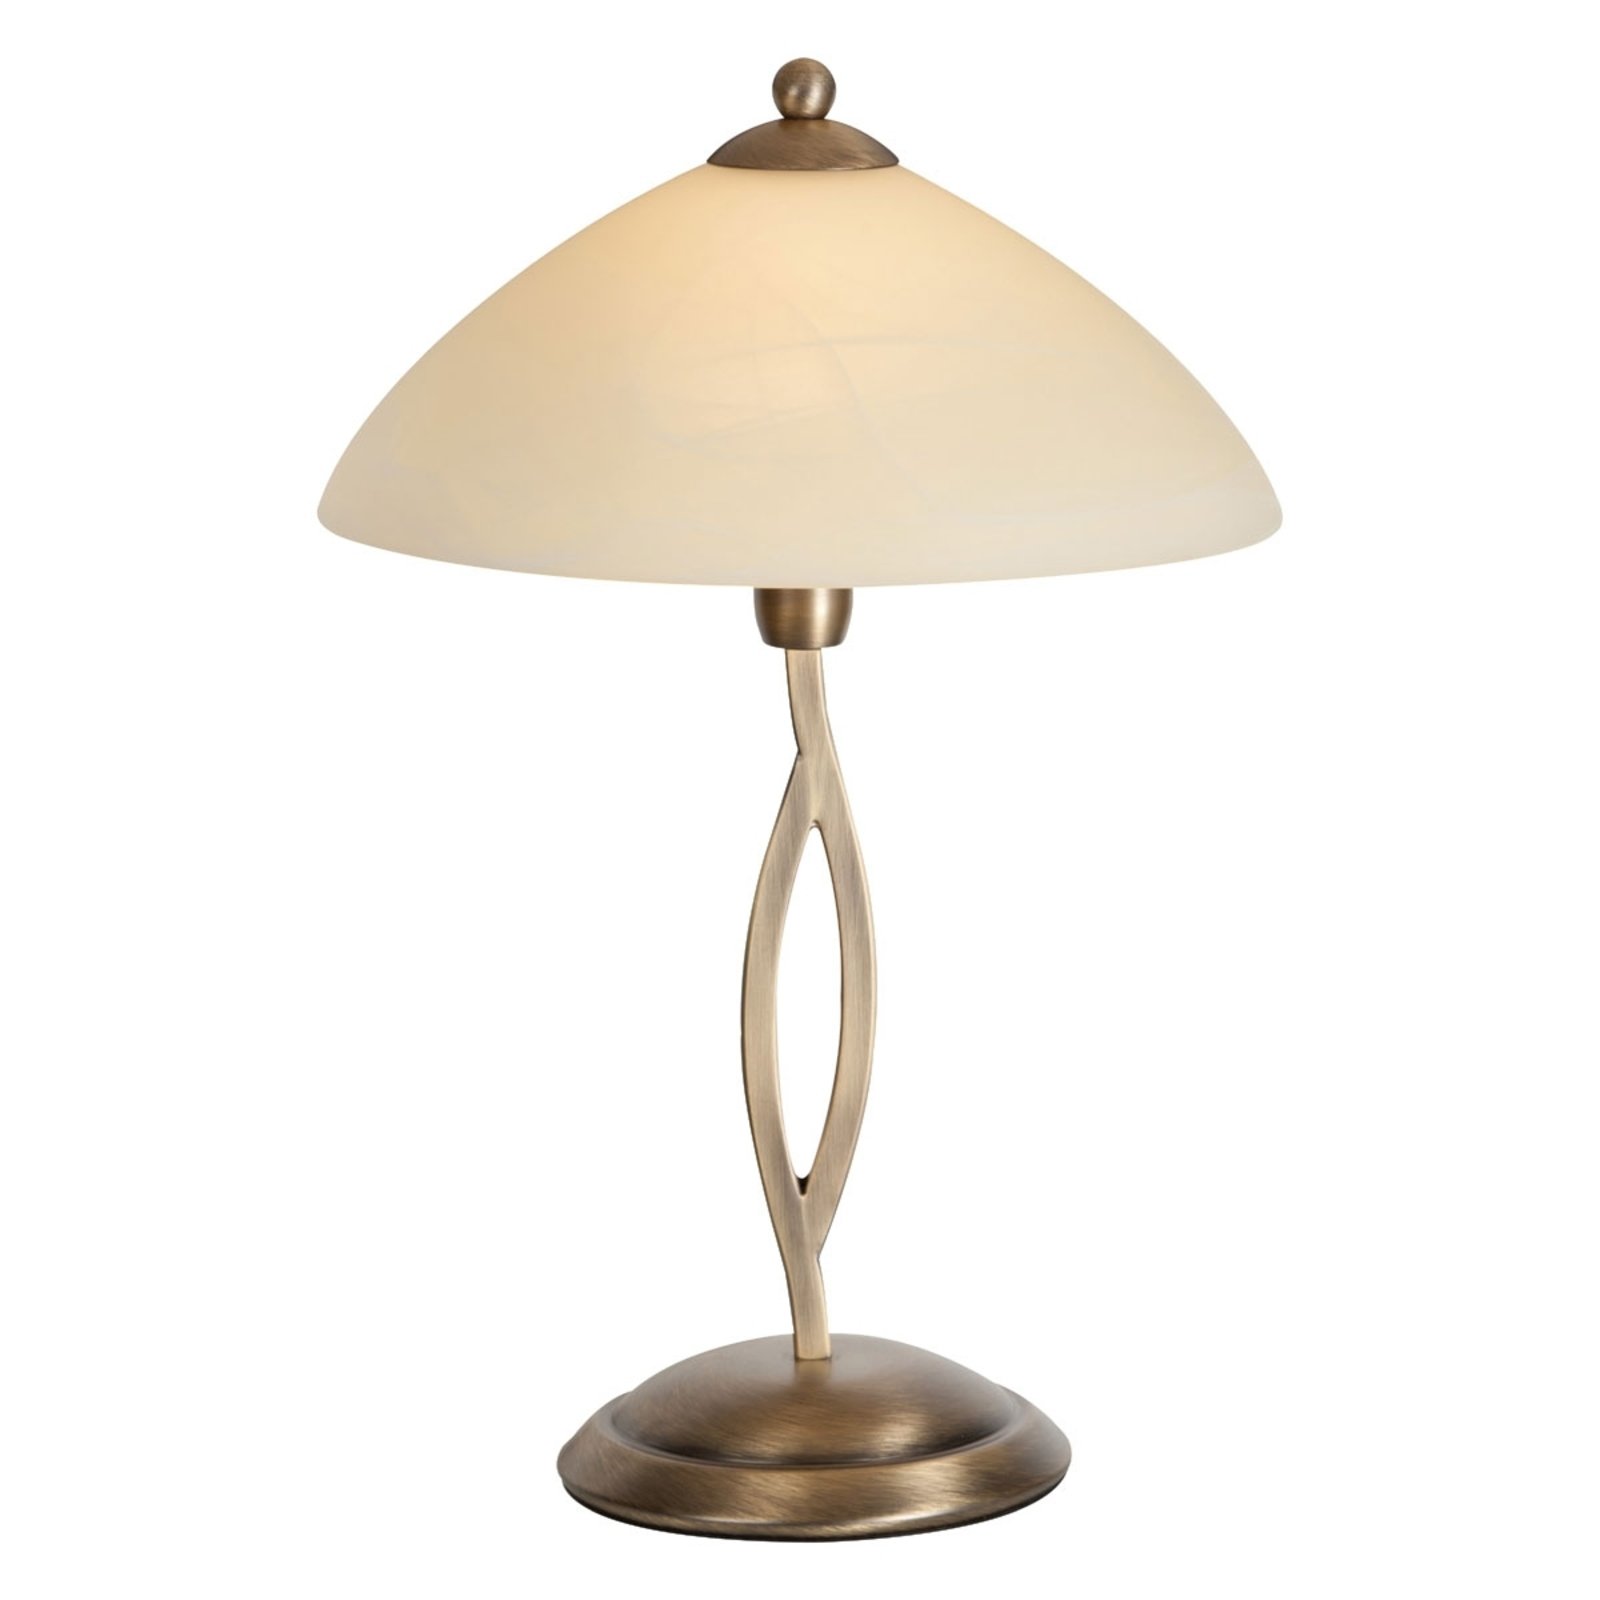 Настолна лампа Capri с височина 45 cm, цвят крем/бронз